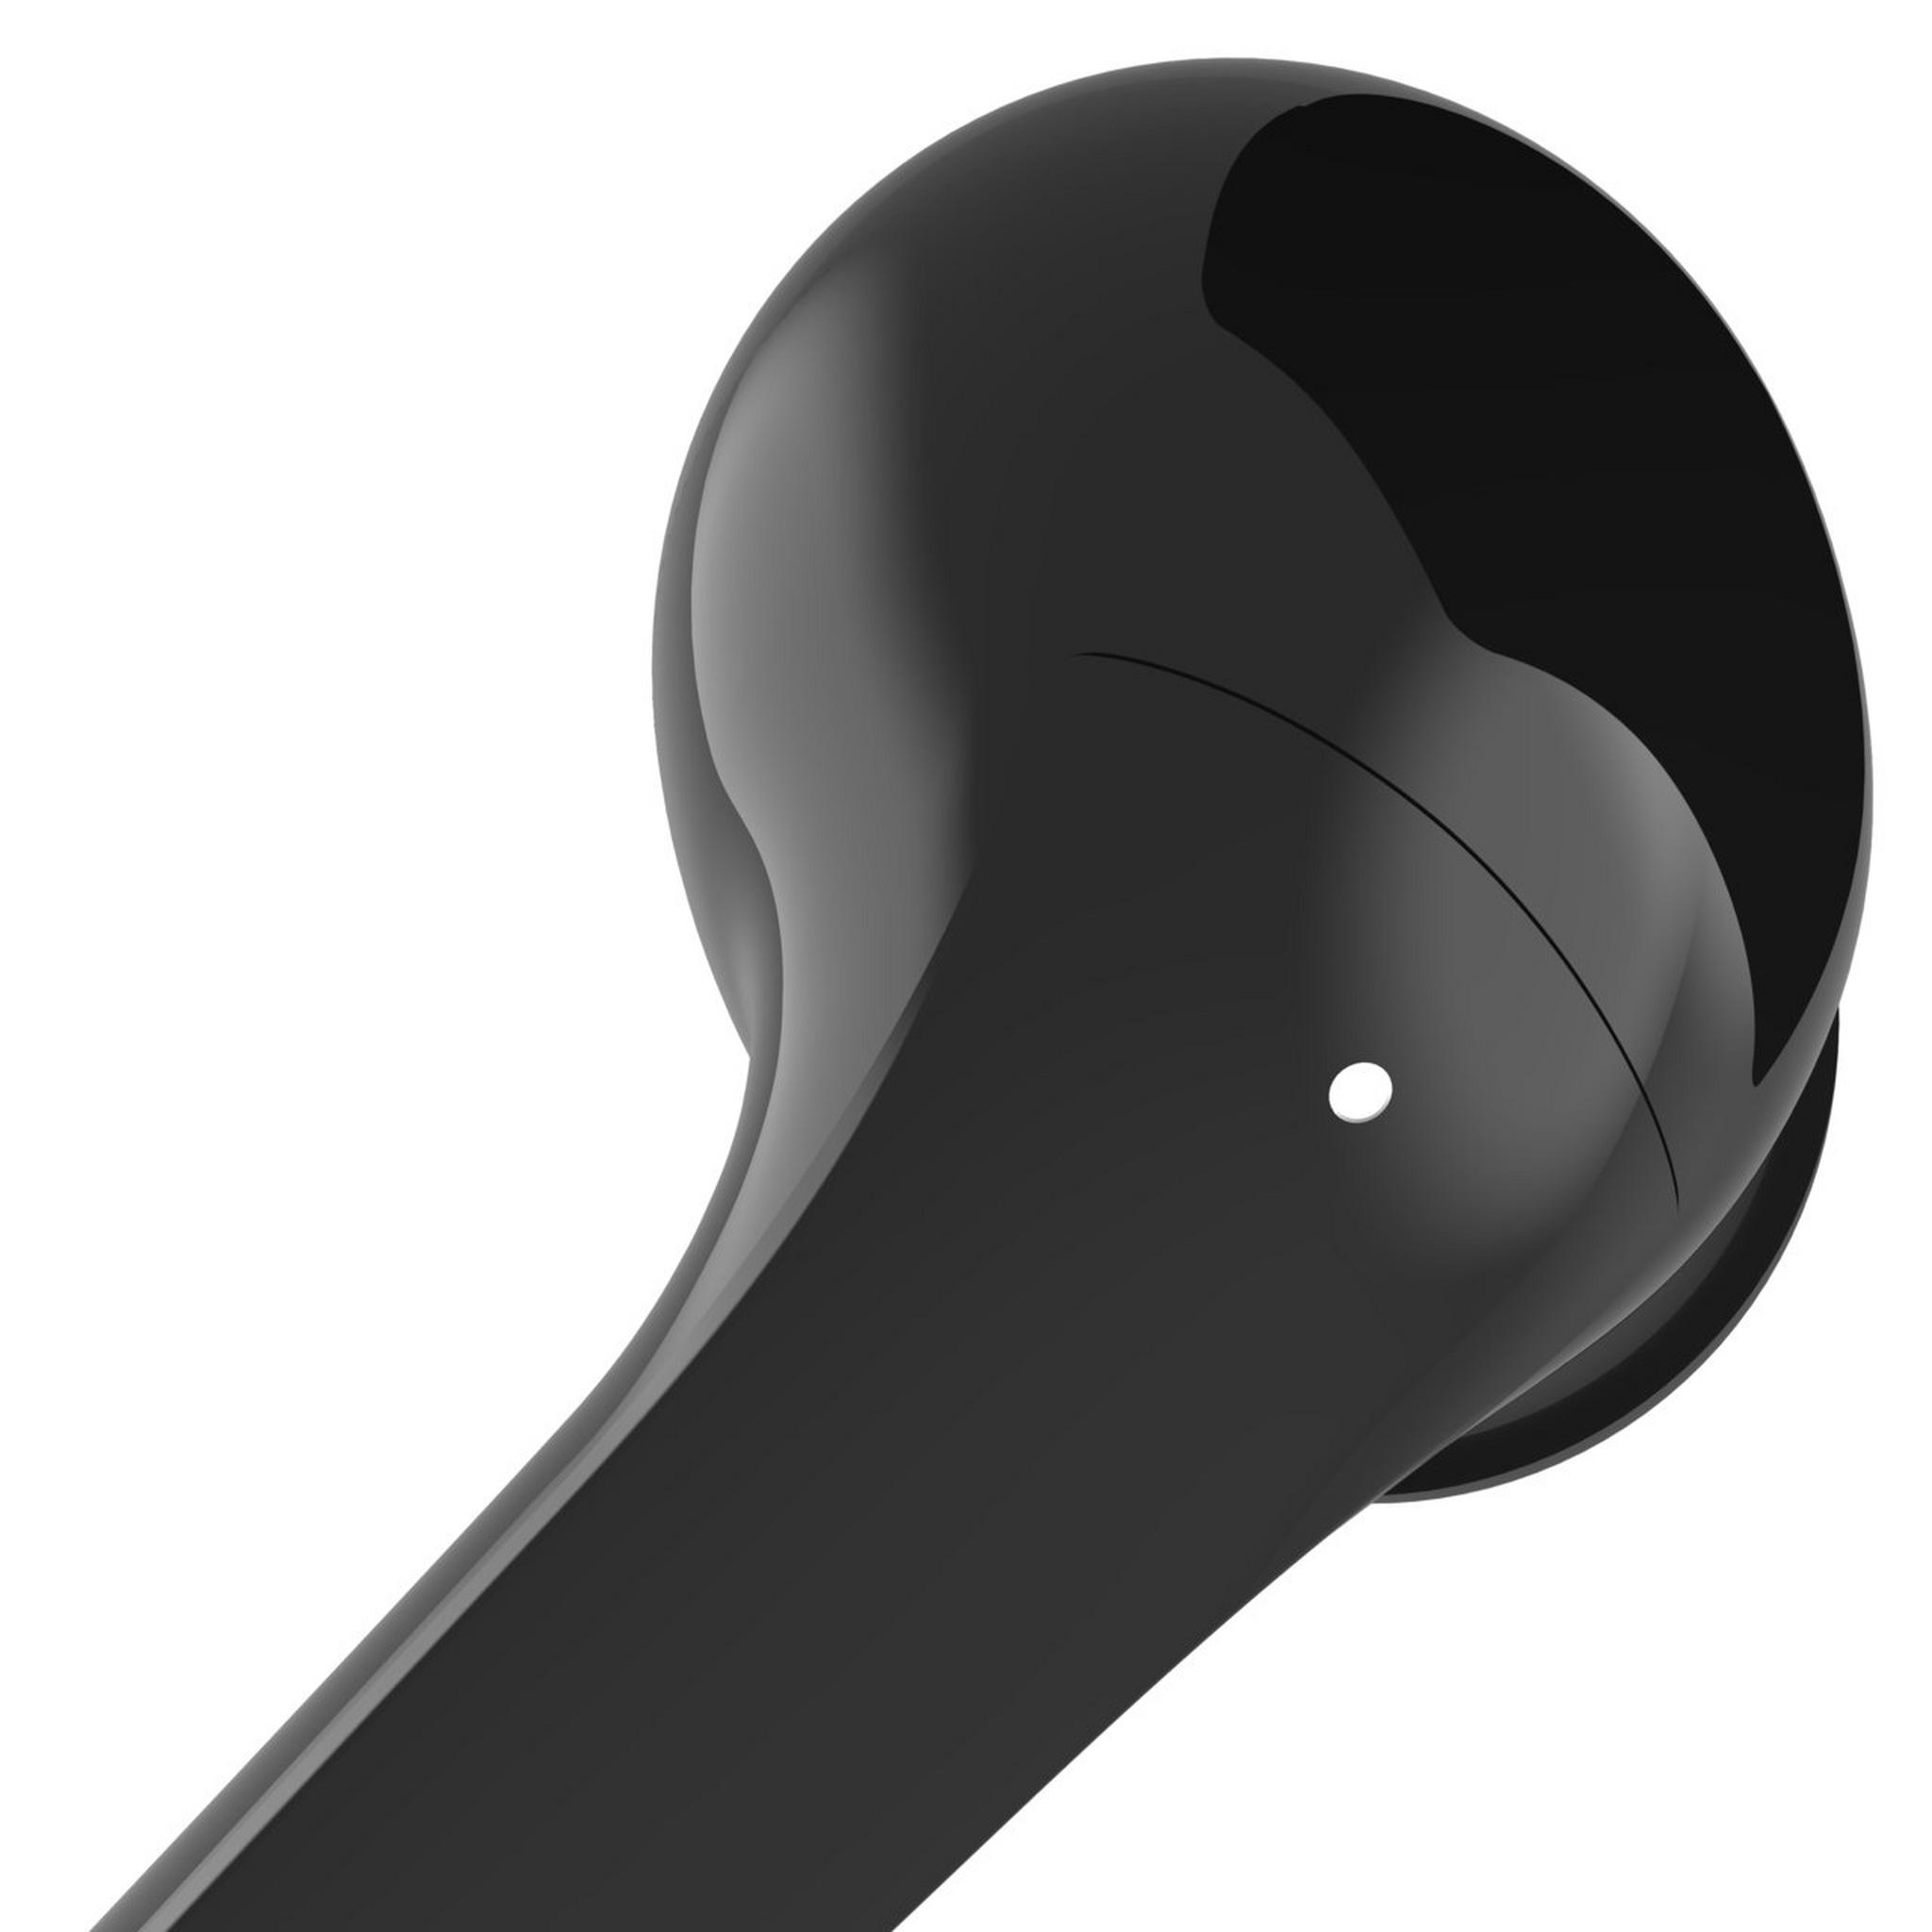 Belkin SoundForm Flow True Wireless Active Noise-Canceling Earbuds - Black